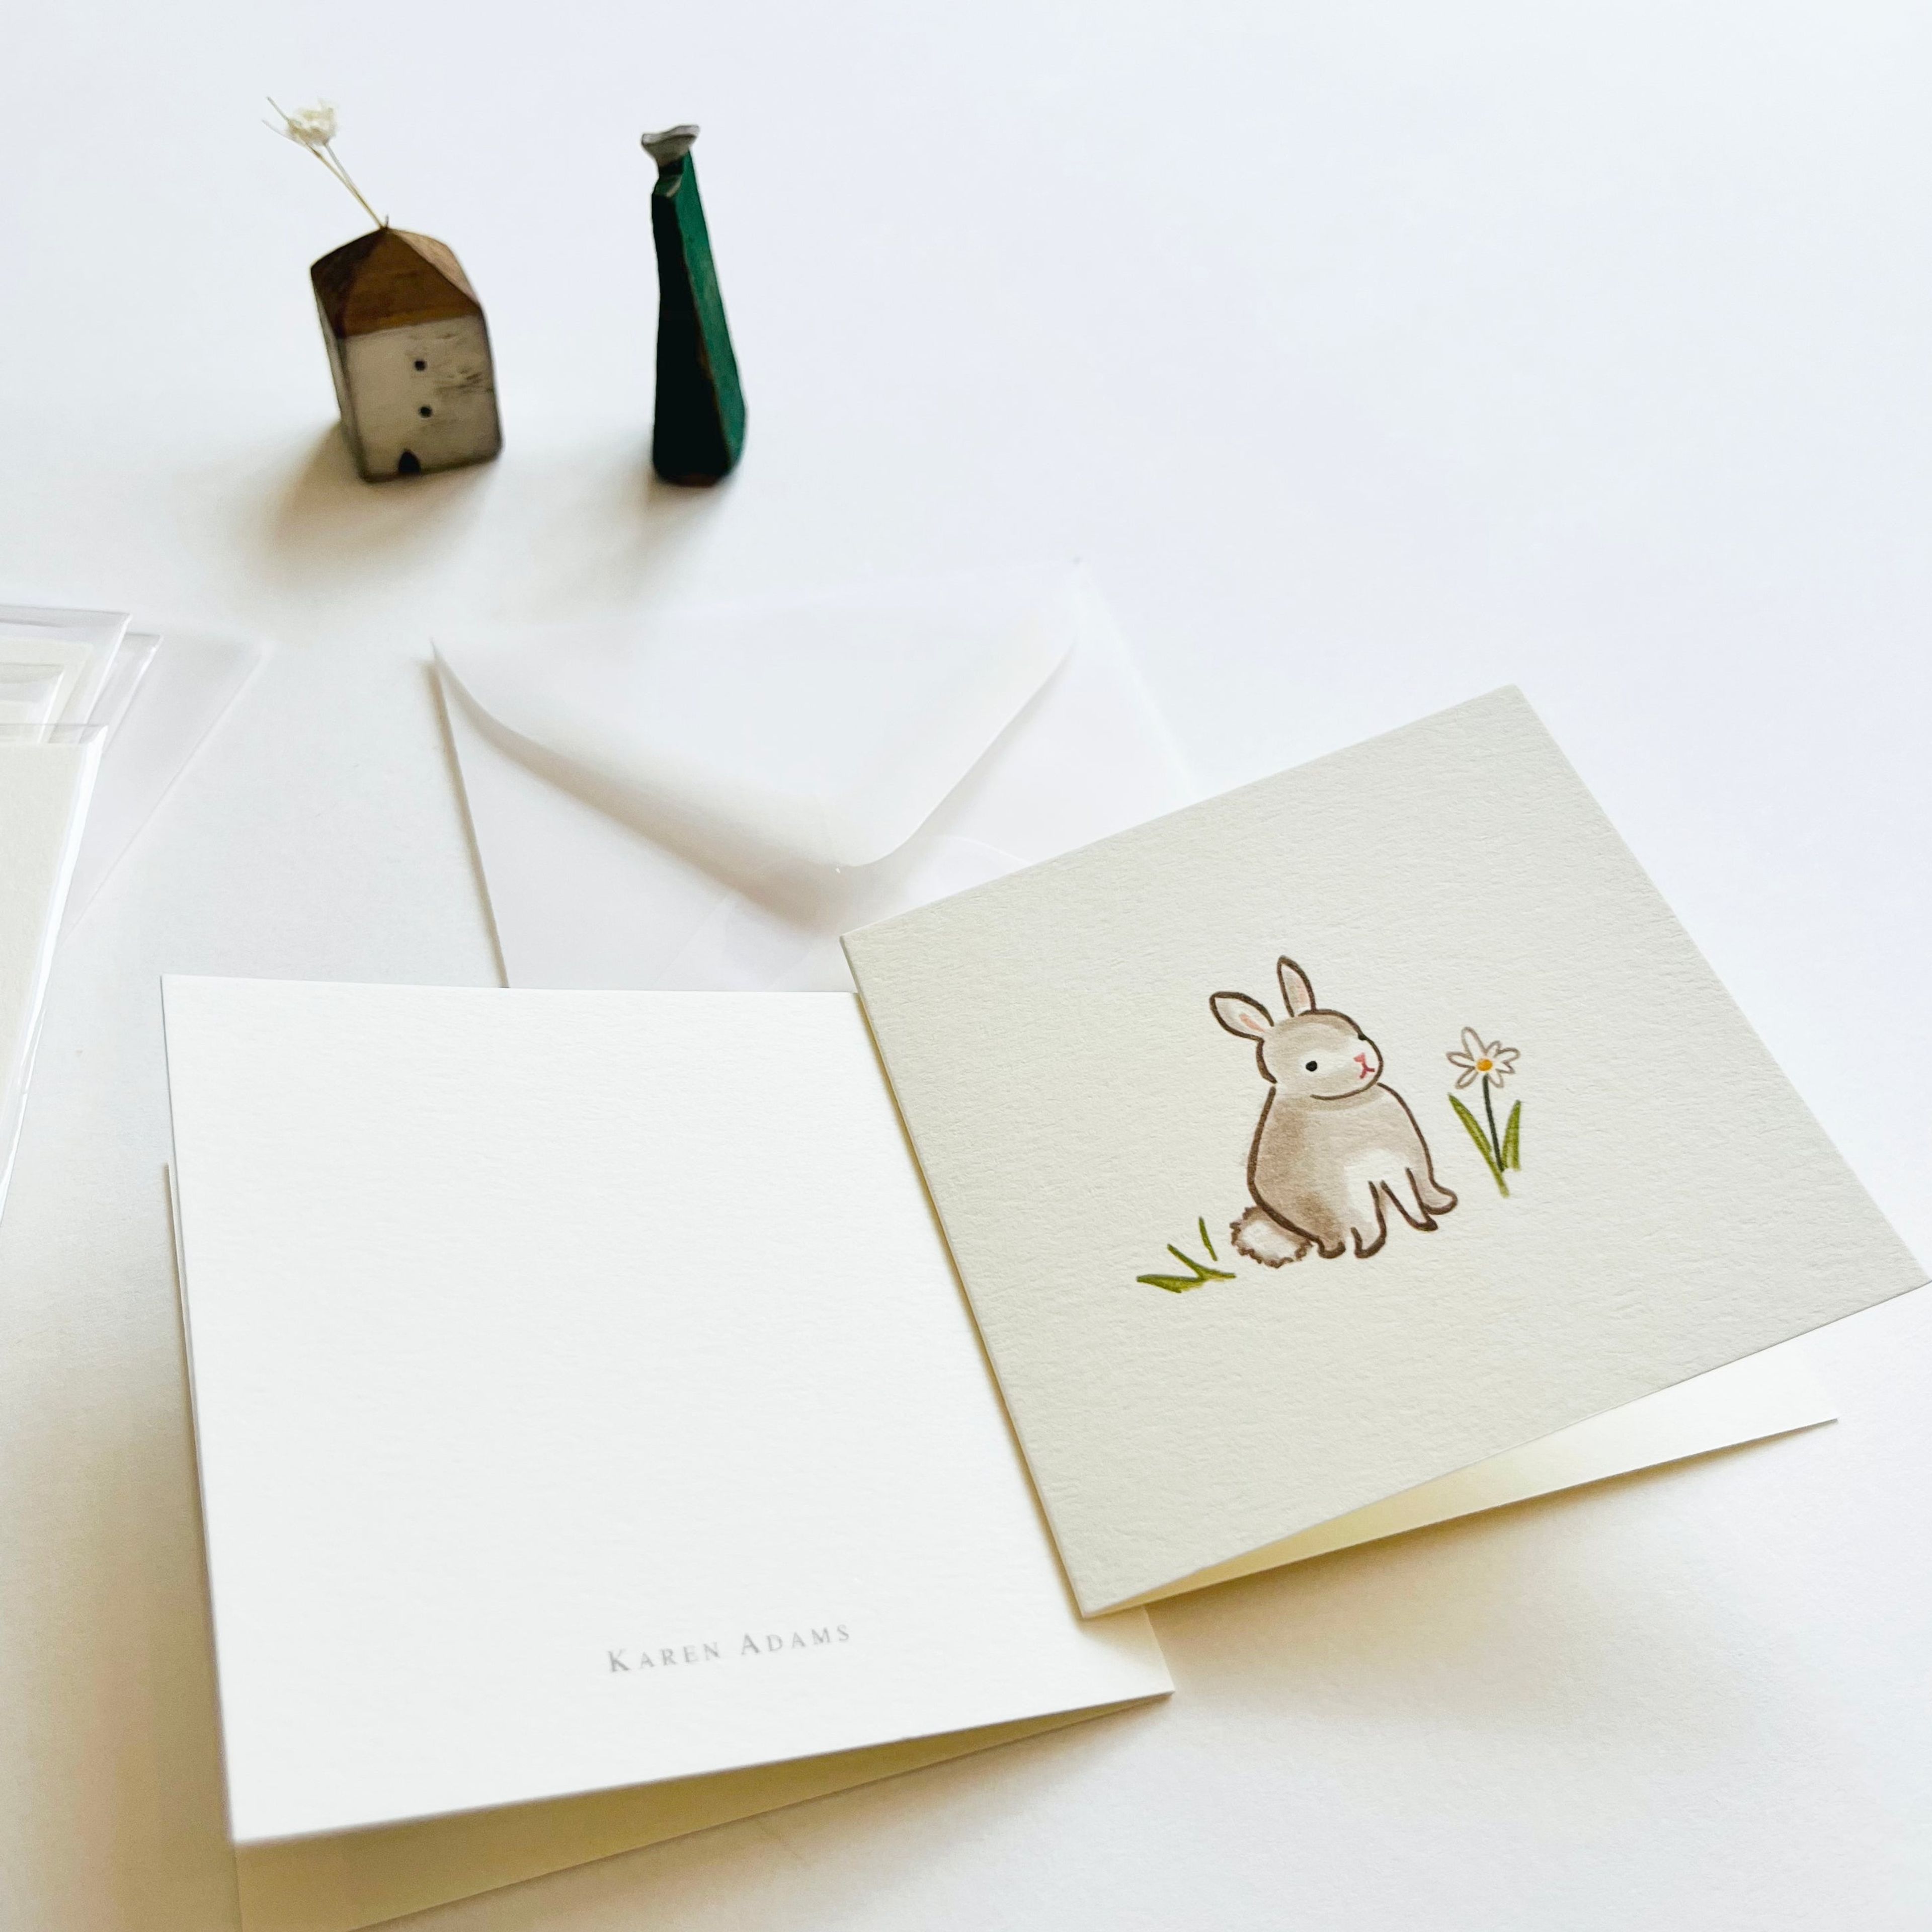 Karen Adams Individual Gift Enclosure - Bunny